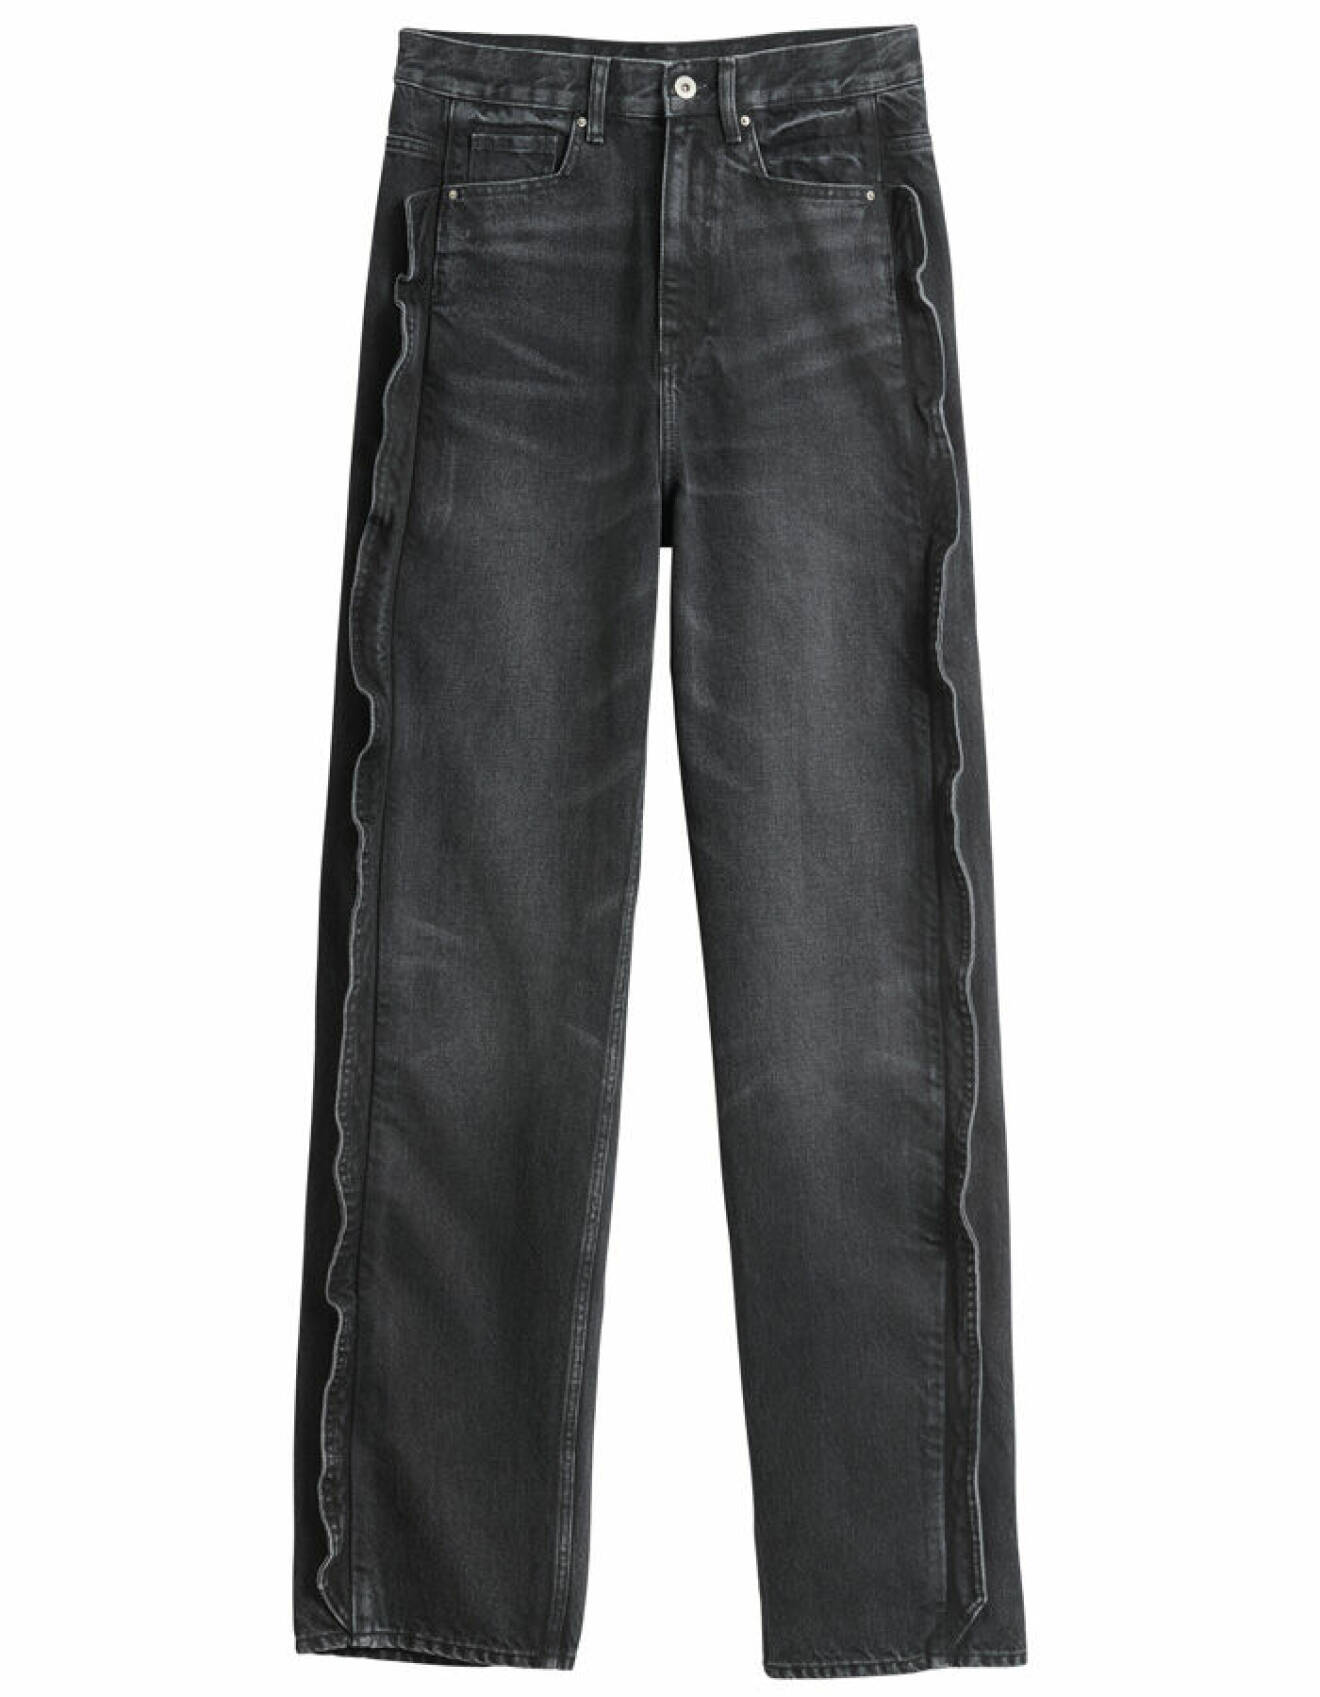 H&amp;M Innovation Story Cherish Waste – grå tvättade jeans med låg midja, lös passform och volanger